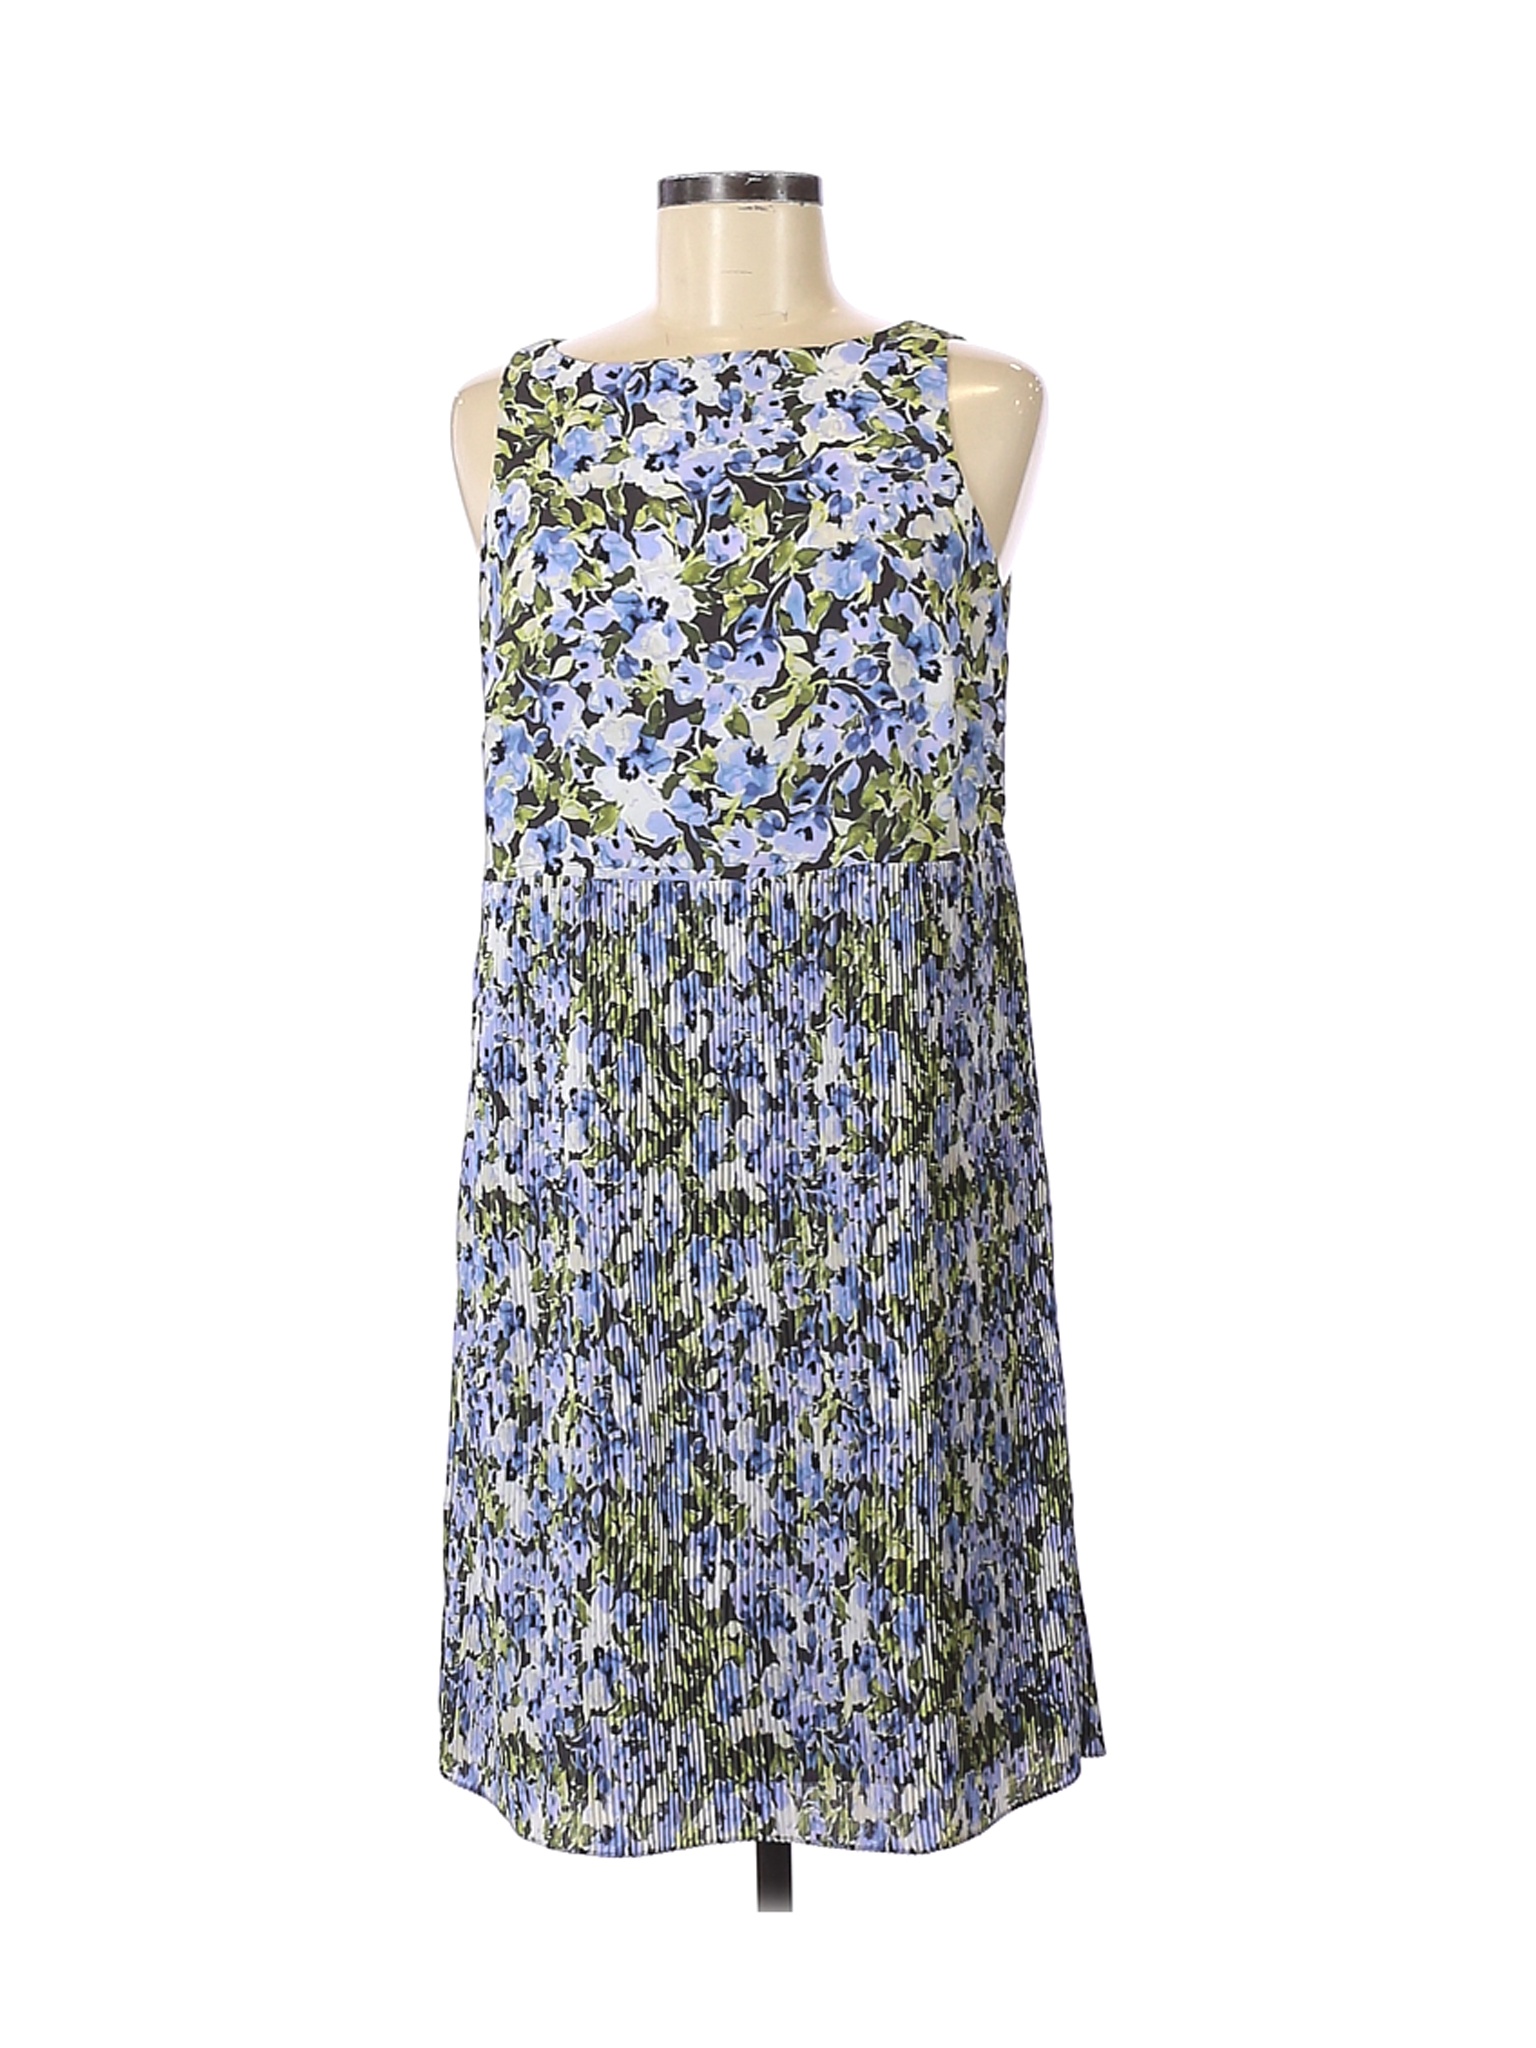 NWT J.Jill Women Blue Casual Dress S | eBay